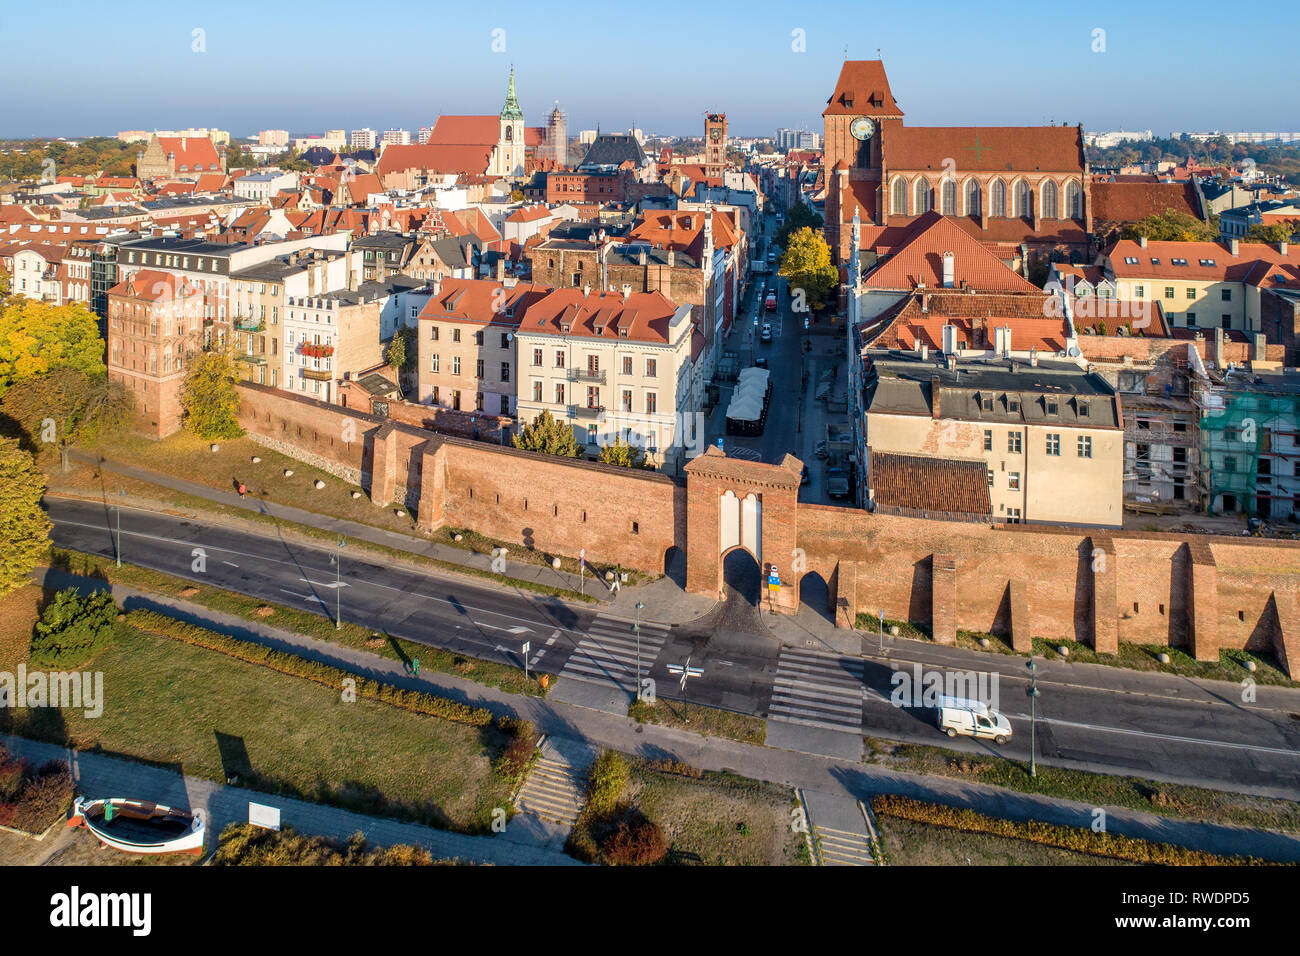 Torun, Polen. Alte Stadt mit mittelalterlichen gotischen Kathedrale des Heiligen Johannes, die Town Hall Clock Tower, Kirchen, Stadtmauer und Stadttore. Luftaufnahme in der Sonne Stockfoto